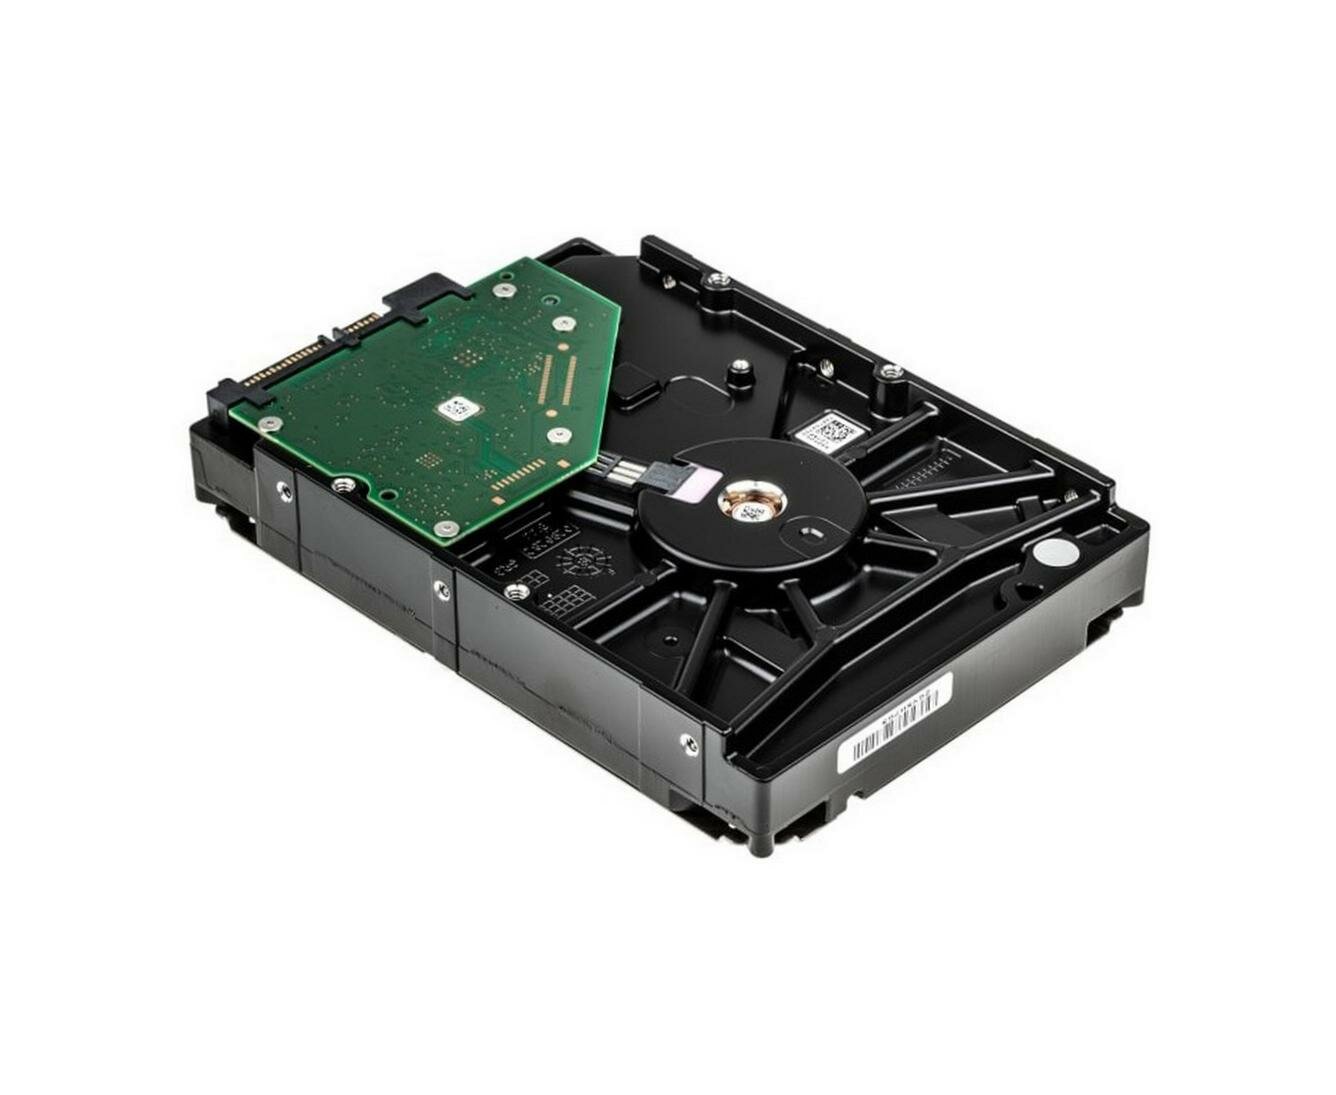 Жесткий HDD диск объемом 2 Тб Cигейт СкайХавк (hdd 3.5) (I29435ZH) и размером 3,5 дюйма - диск для систем видеонаблюдения, интерфейс SATA 6 Гбит/с